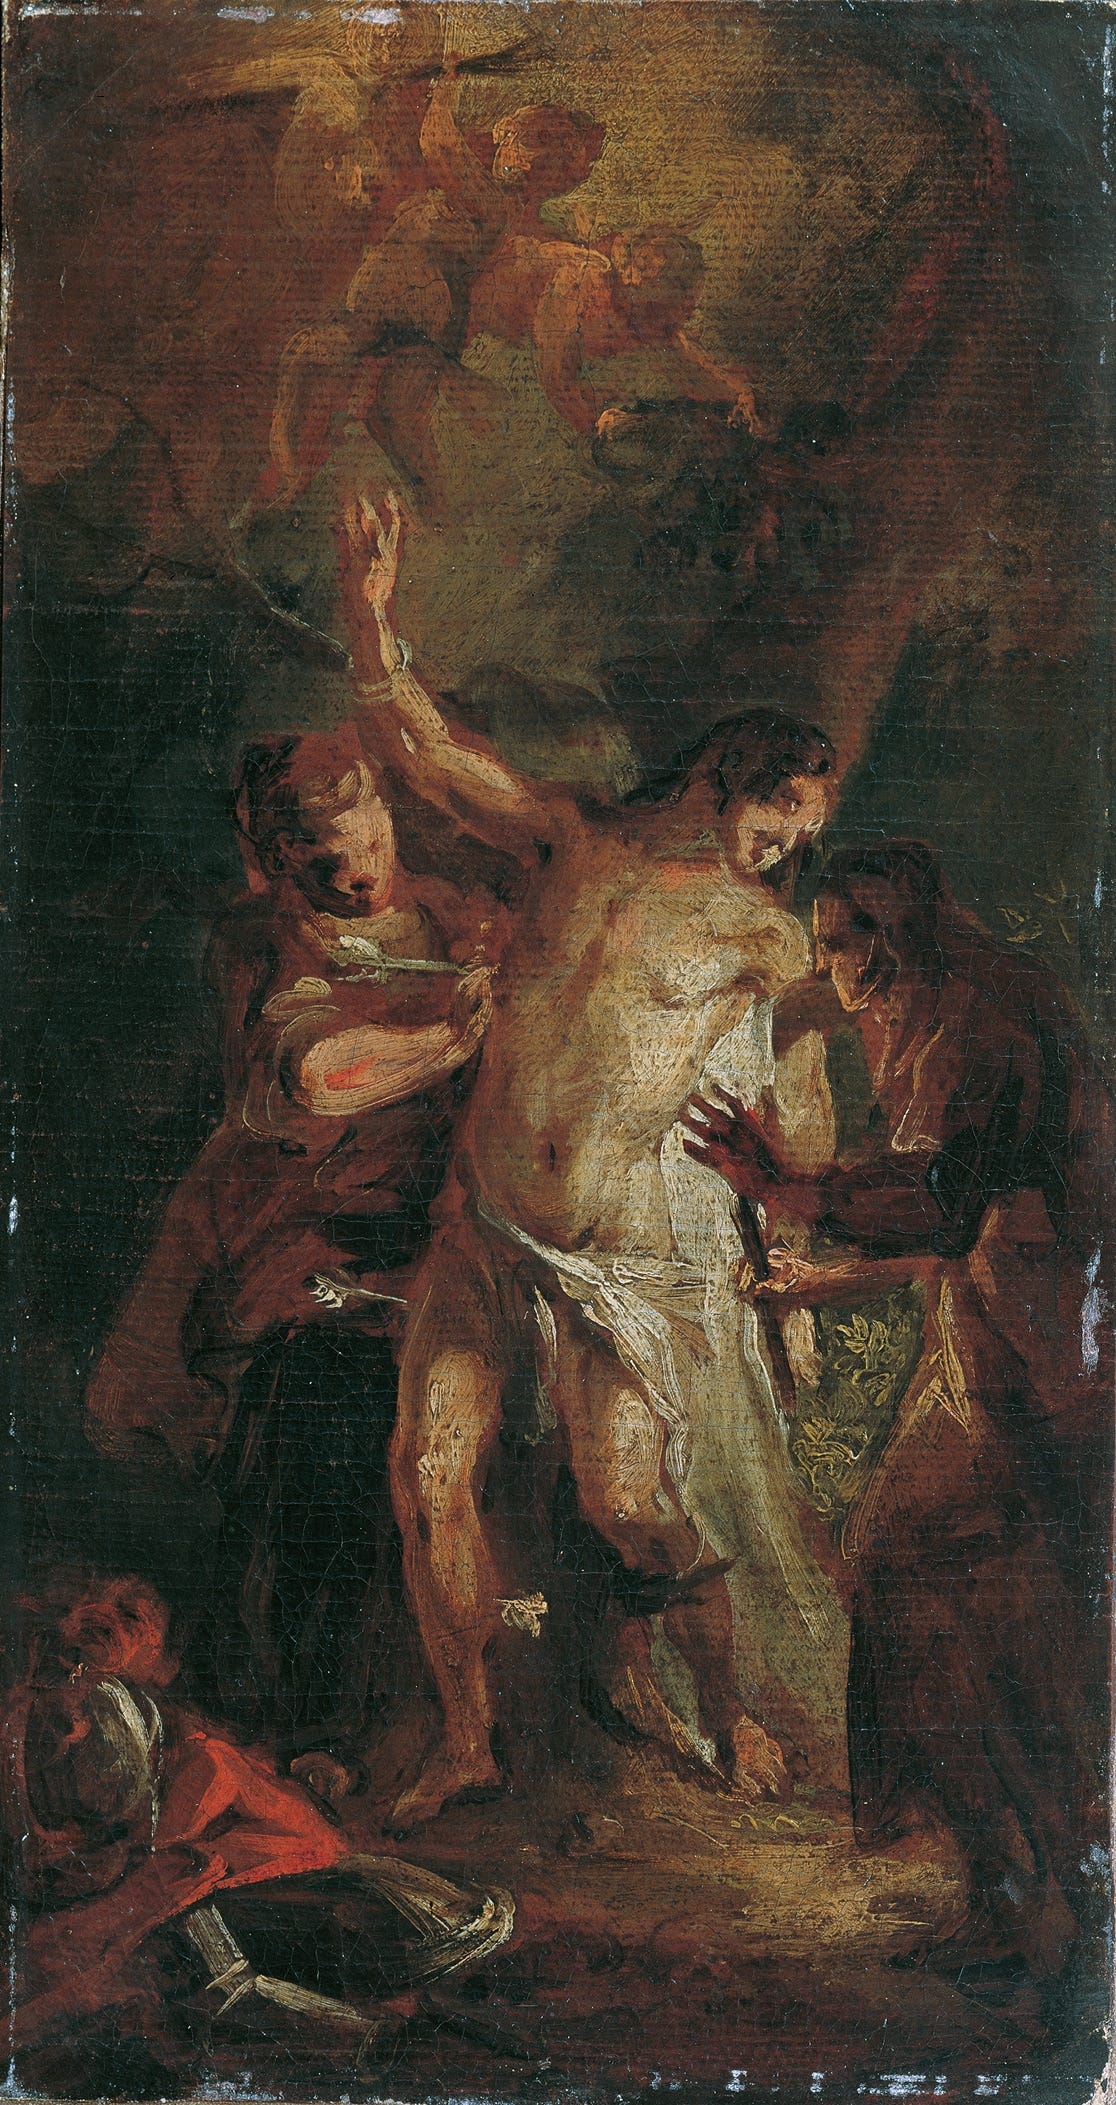 Der heilige Sebastian und die Frauen (1778) by Josef Anton Mesmer (German, 1747-1827)